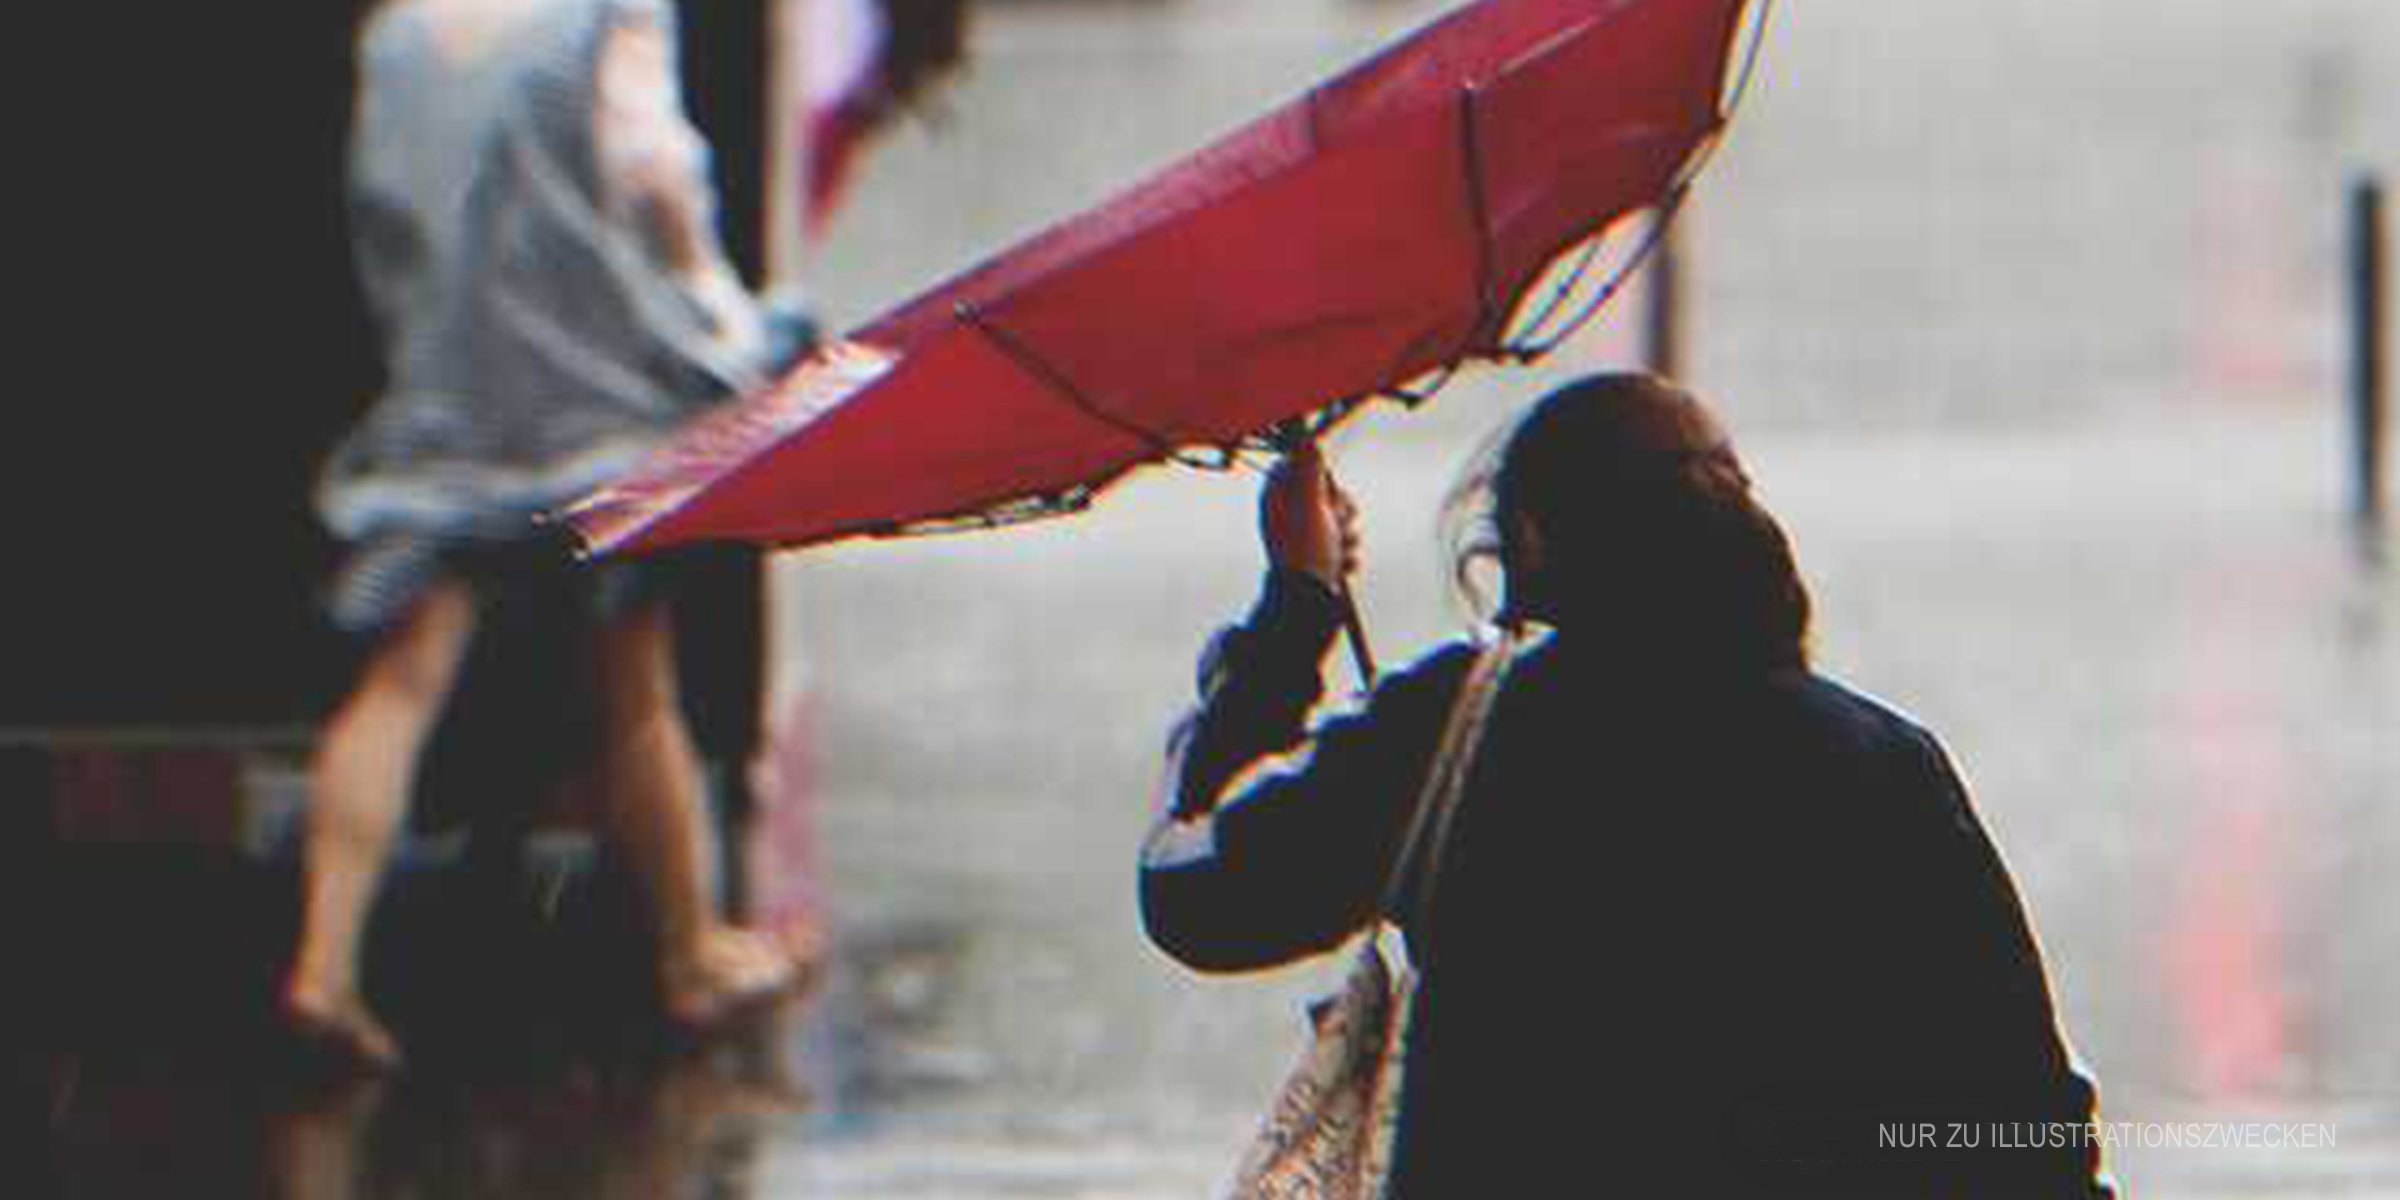 Frau mit kaputtem Regenschirm im Regen | Quelle: Shutterstock